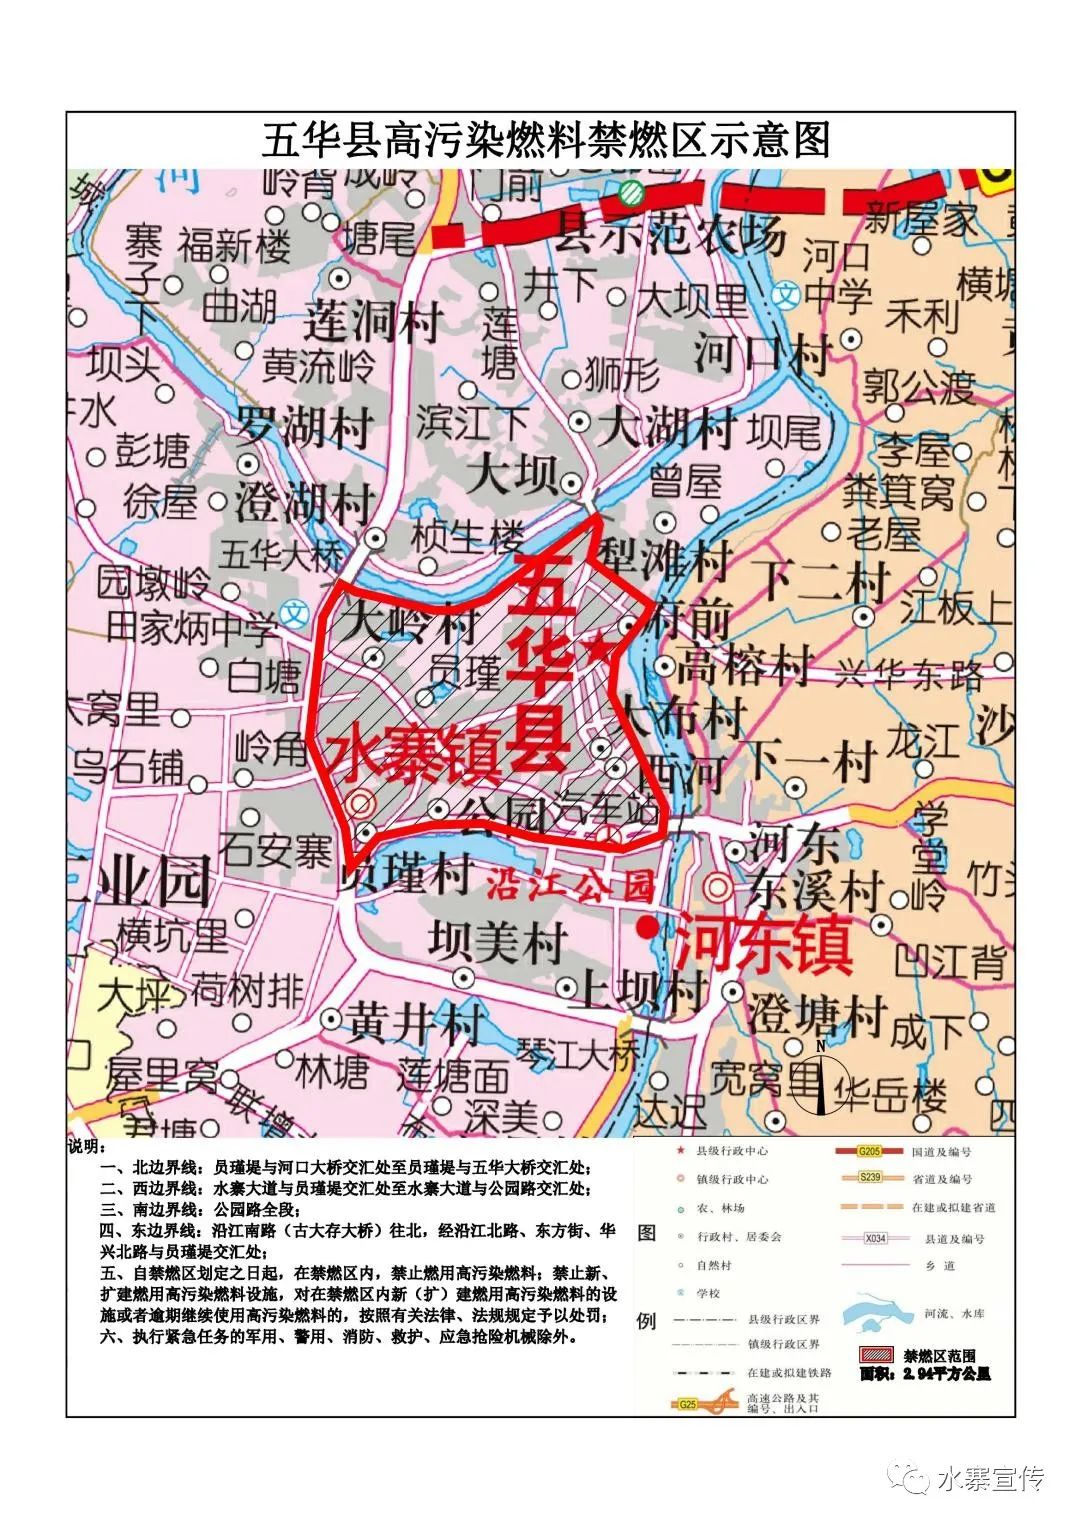 五华县各镇地图图片